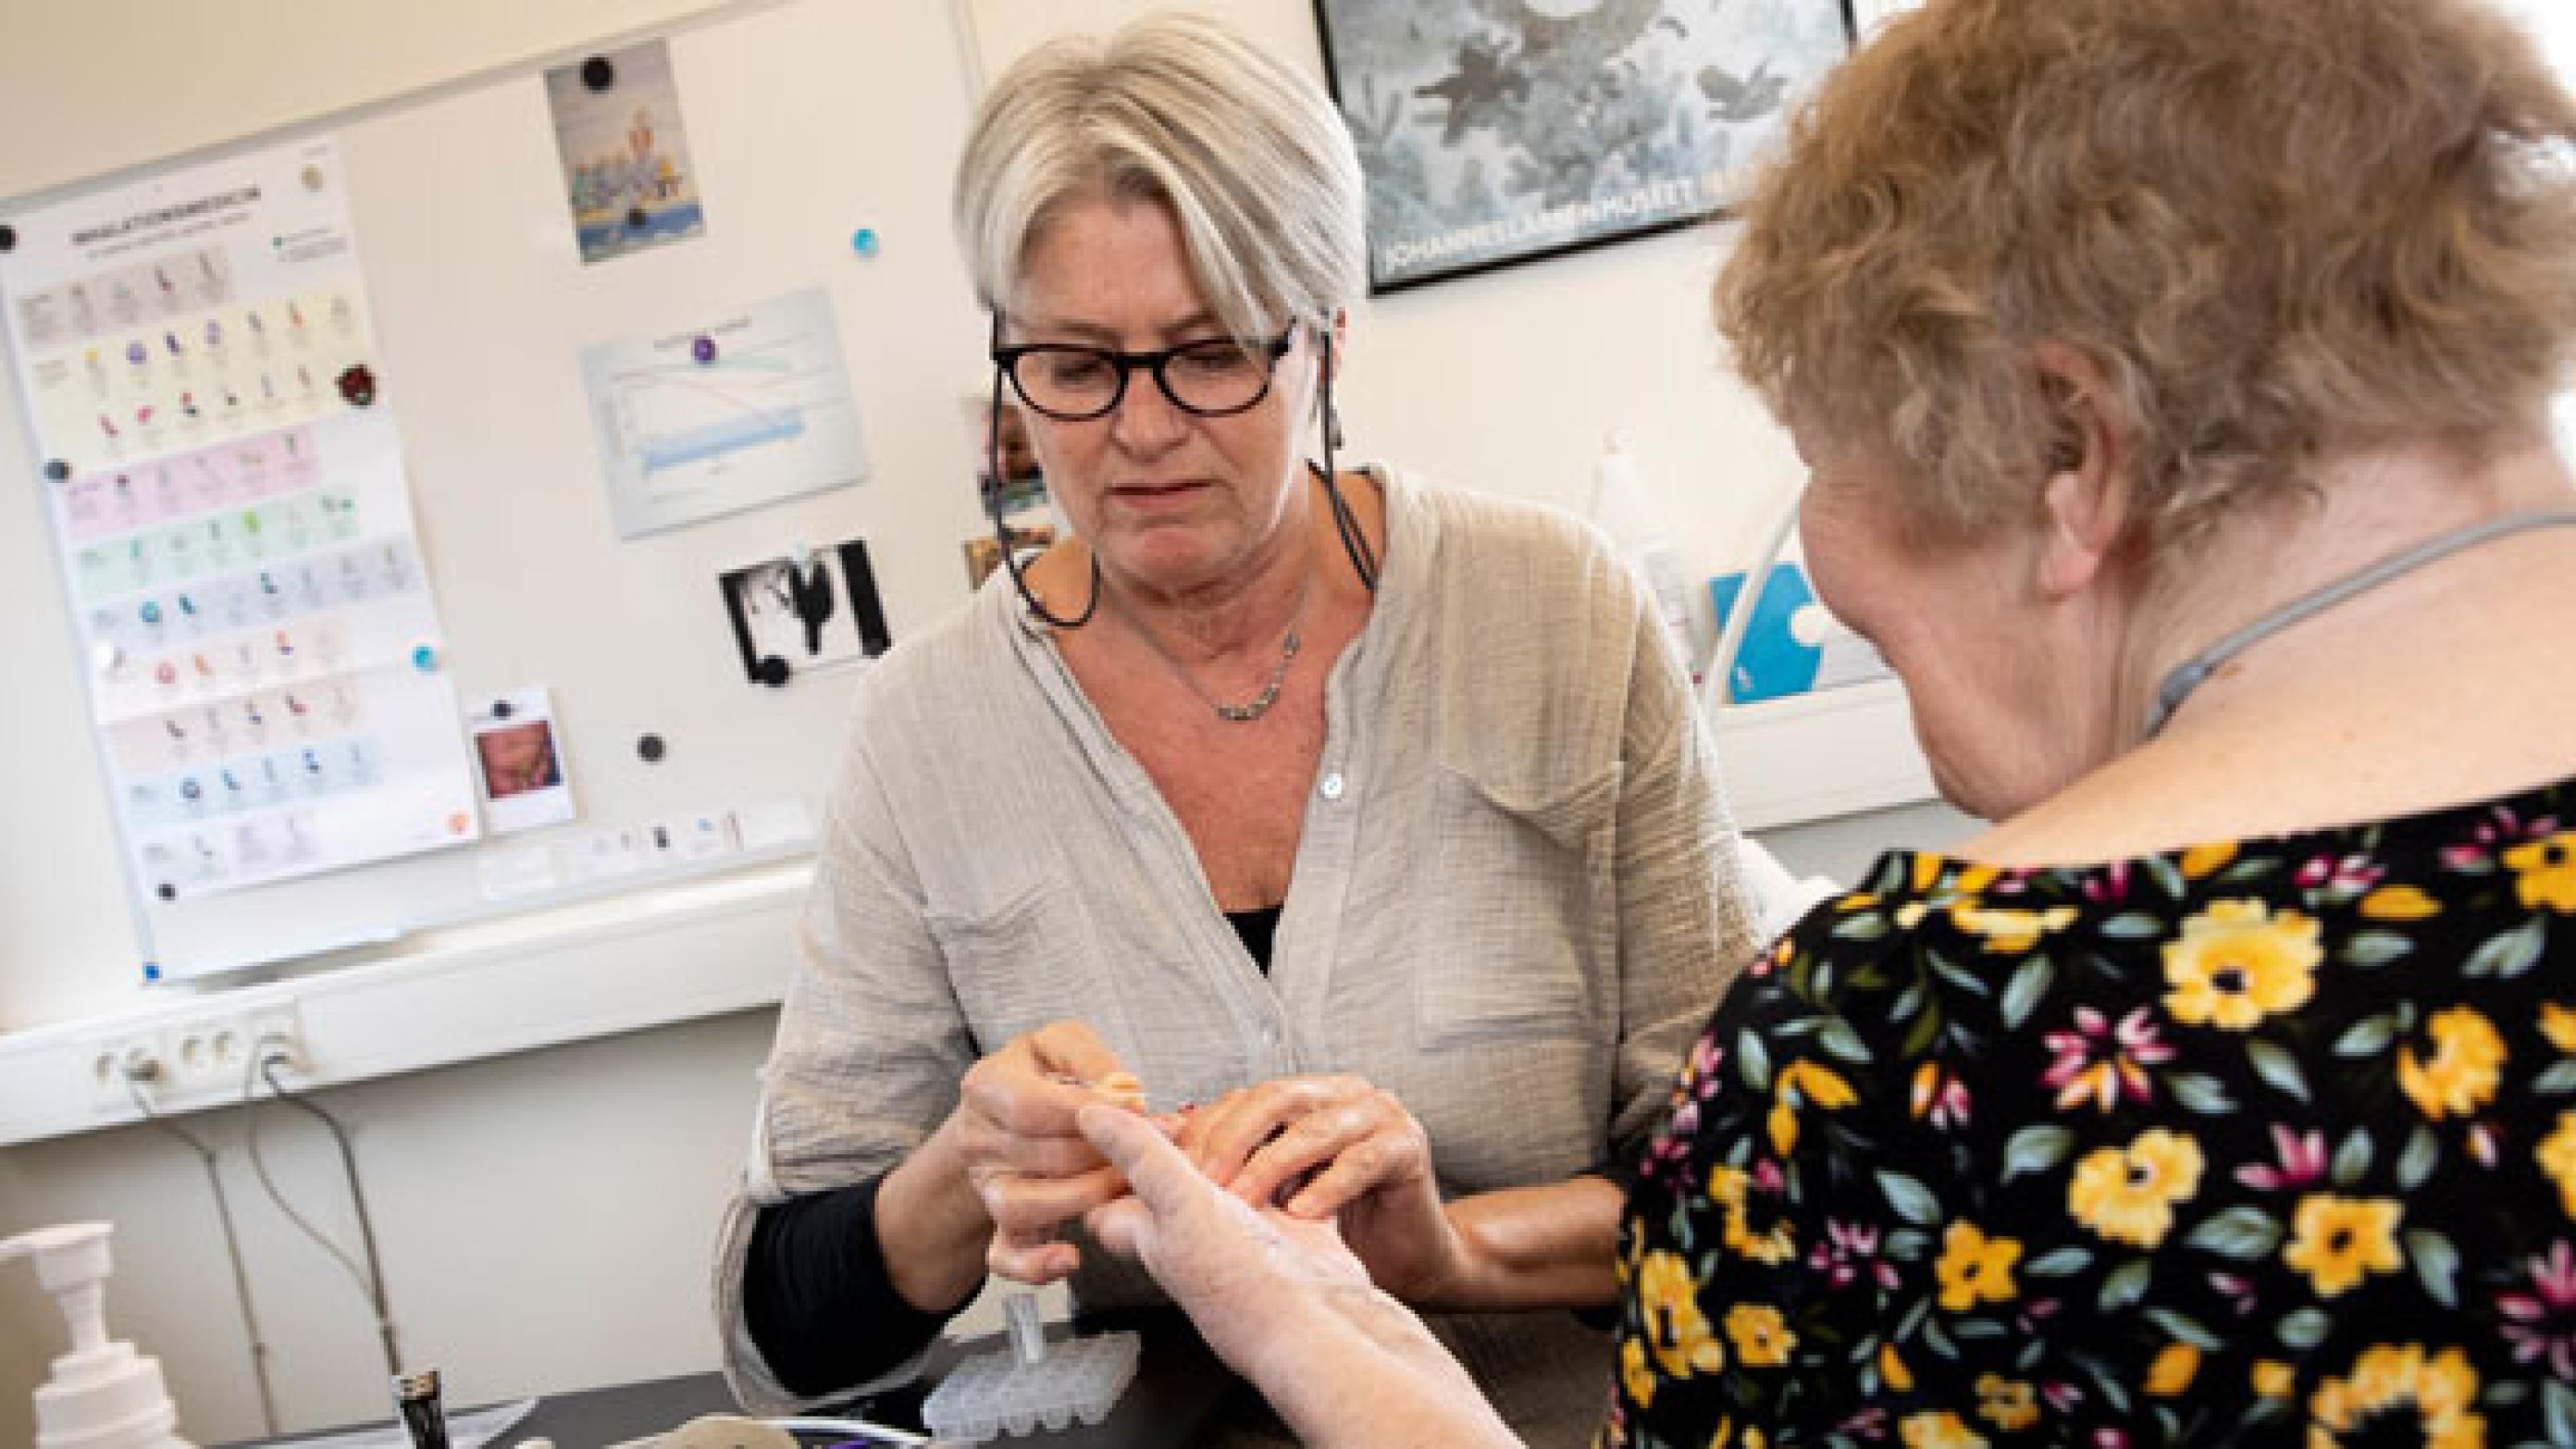 Lisbeth Johannesson har siden 2002 været ansat som sygeplejerske i almen praksis i Rudkøbing. Hun er den, der har kendt klinikkens patienter længst. Grethe er en af de patienter, som Lisbeth kører selvstændigt patientforløb med. I dag er Grethe til årskontrol – og får også tjekket sit infektionstal. Foto: Heidi Lundsgaard 